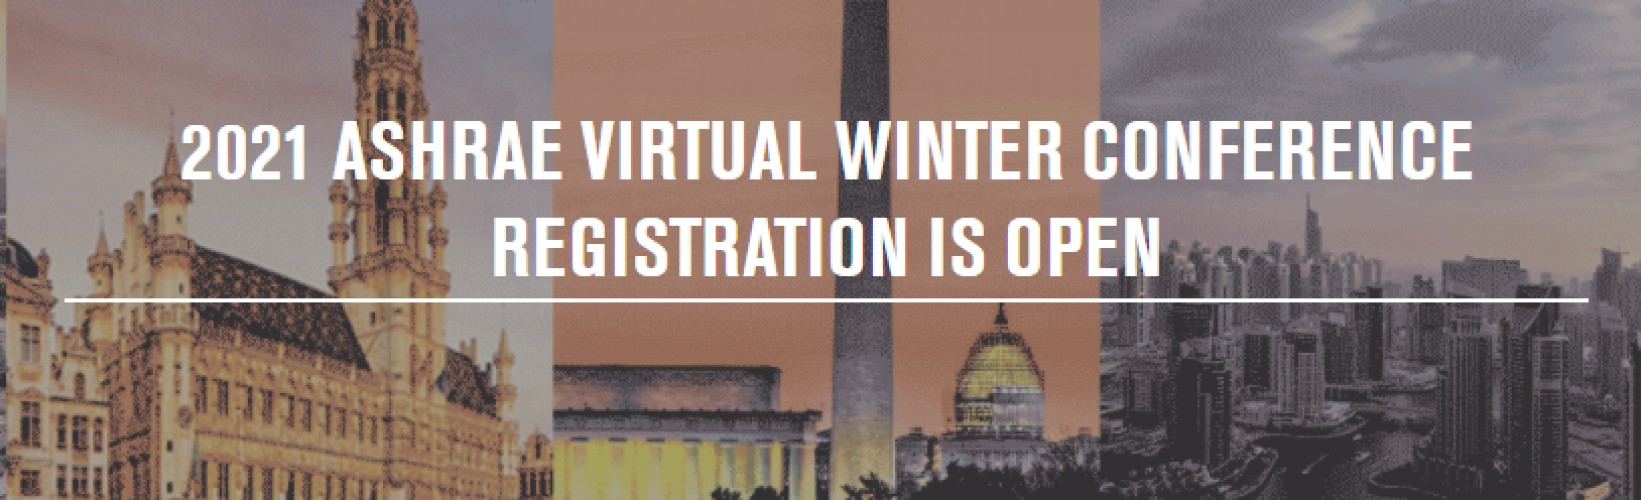 abierta-la-inscripcin-a-la-conferencia-virtual-de-invierno-de-ashrae-2021